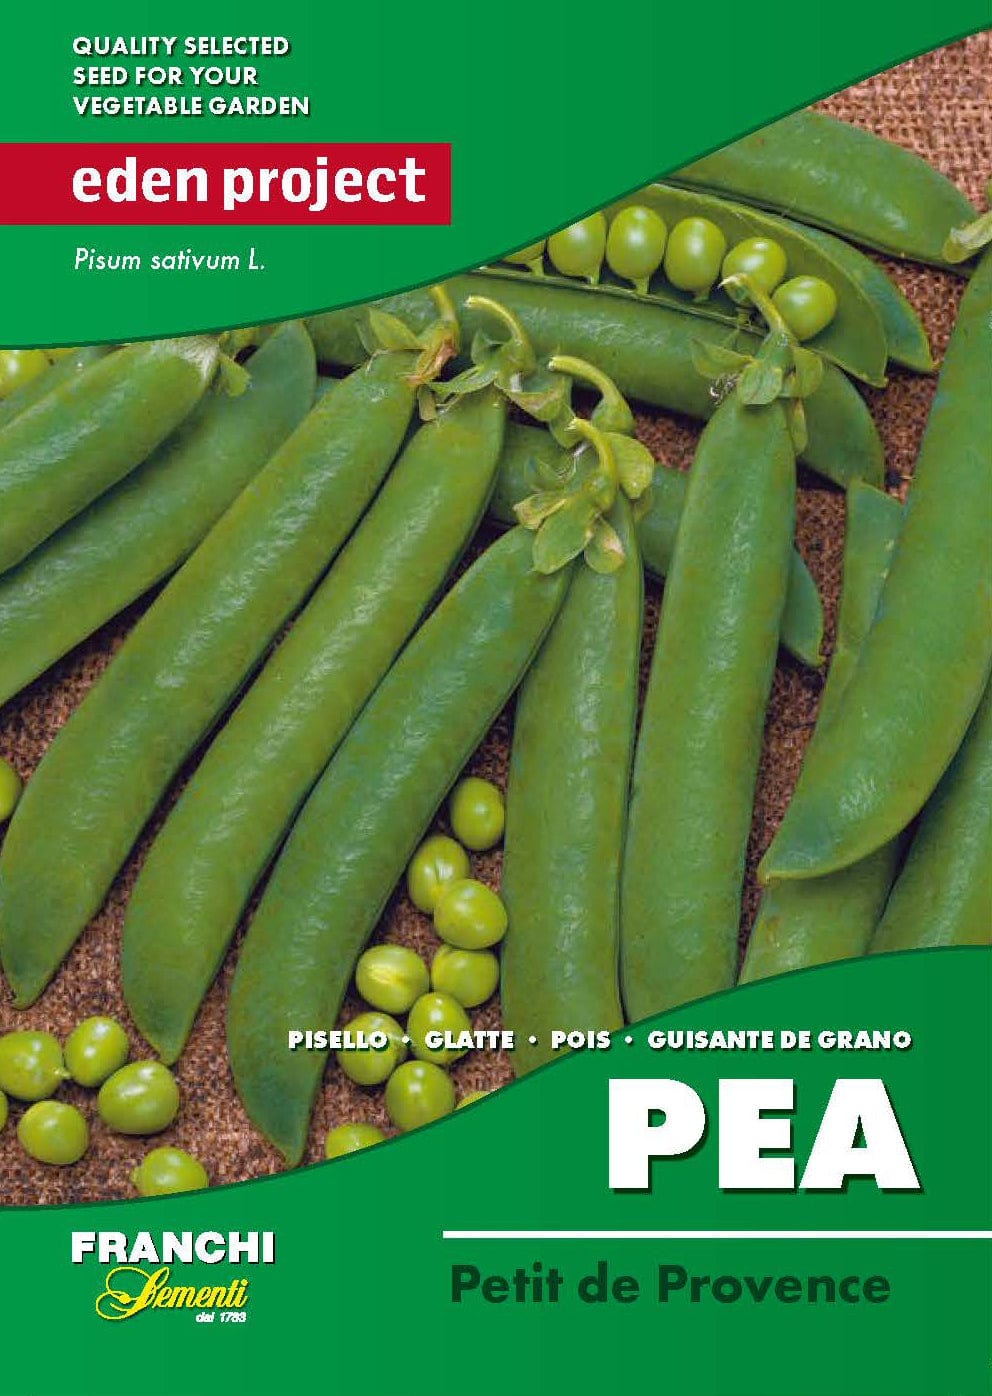 Eden pea seeds